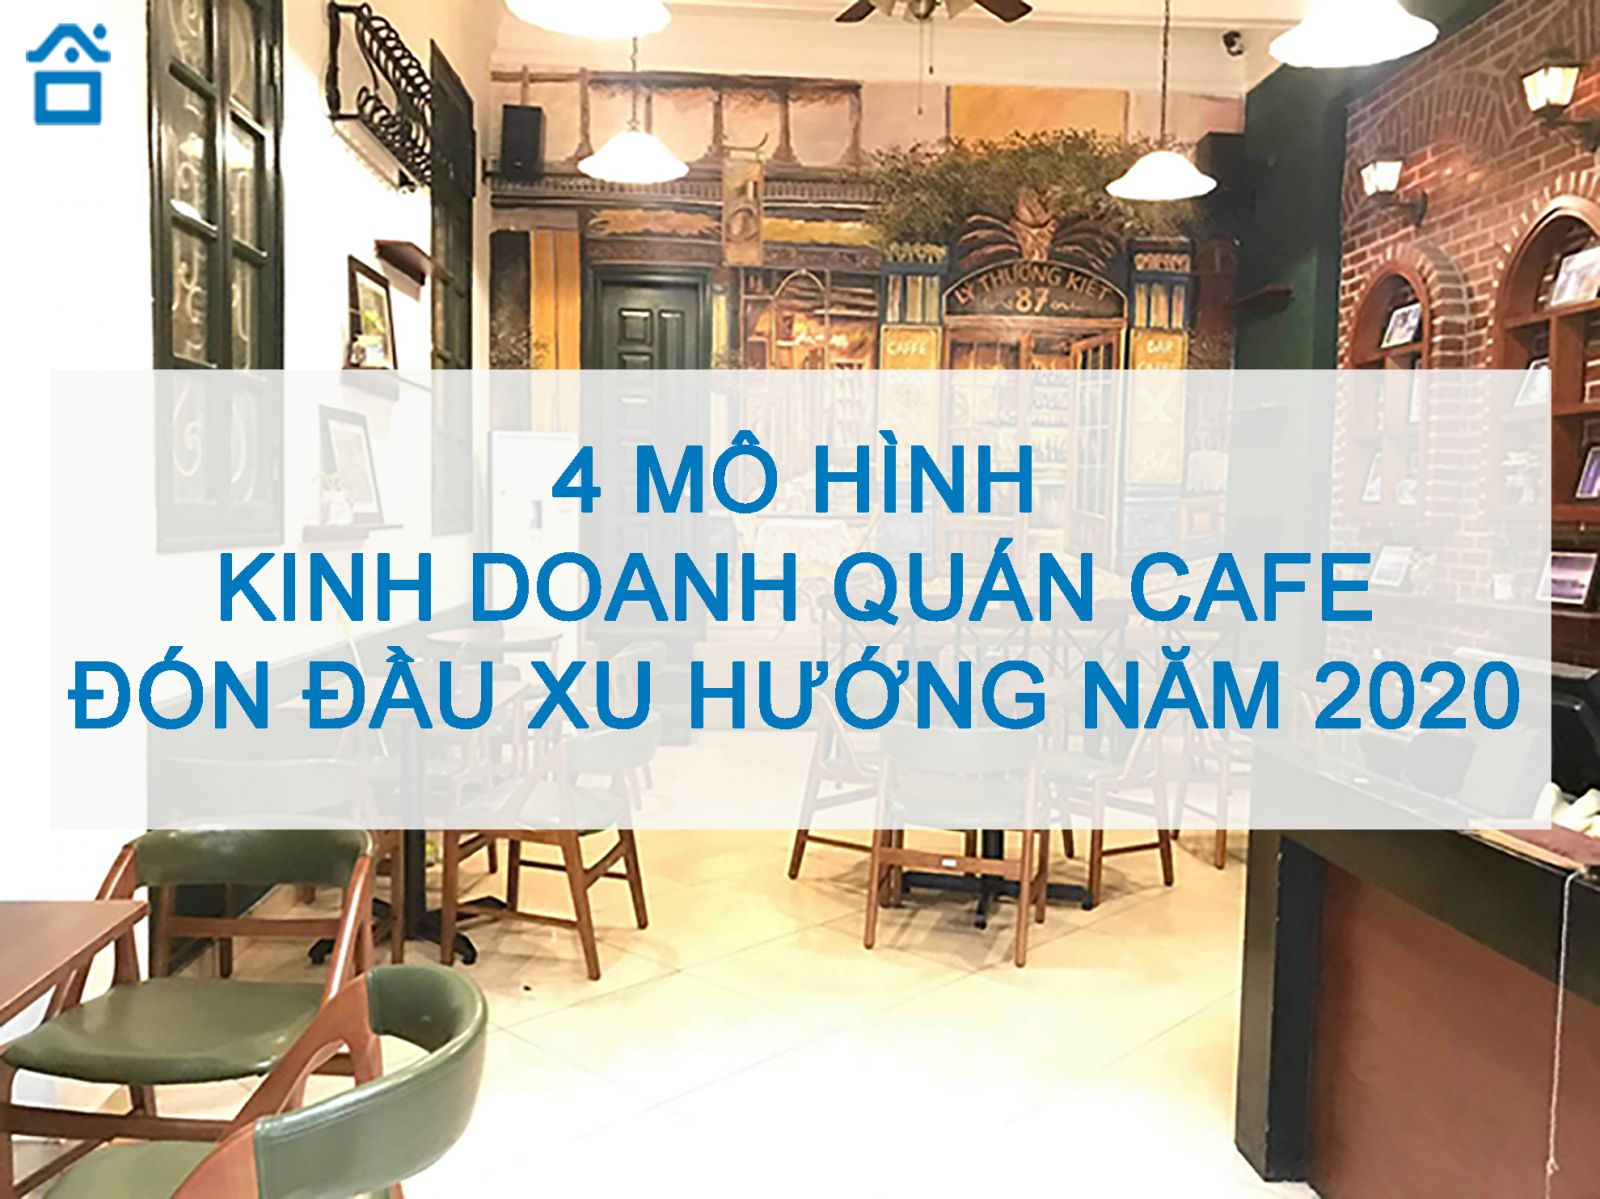 Quán cafe là nơi tuyệt vời để thưởng thức một tách cà phê đậm đà và trò chuyện cùng bạn bè. Hình ảnh về quán cafe sẽ mang đến cảm giác ấm cúng và đậm chất văn hoá của Việt Nam.